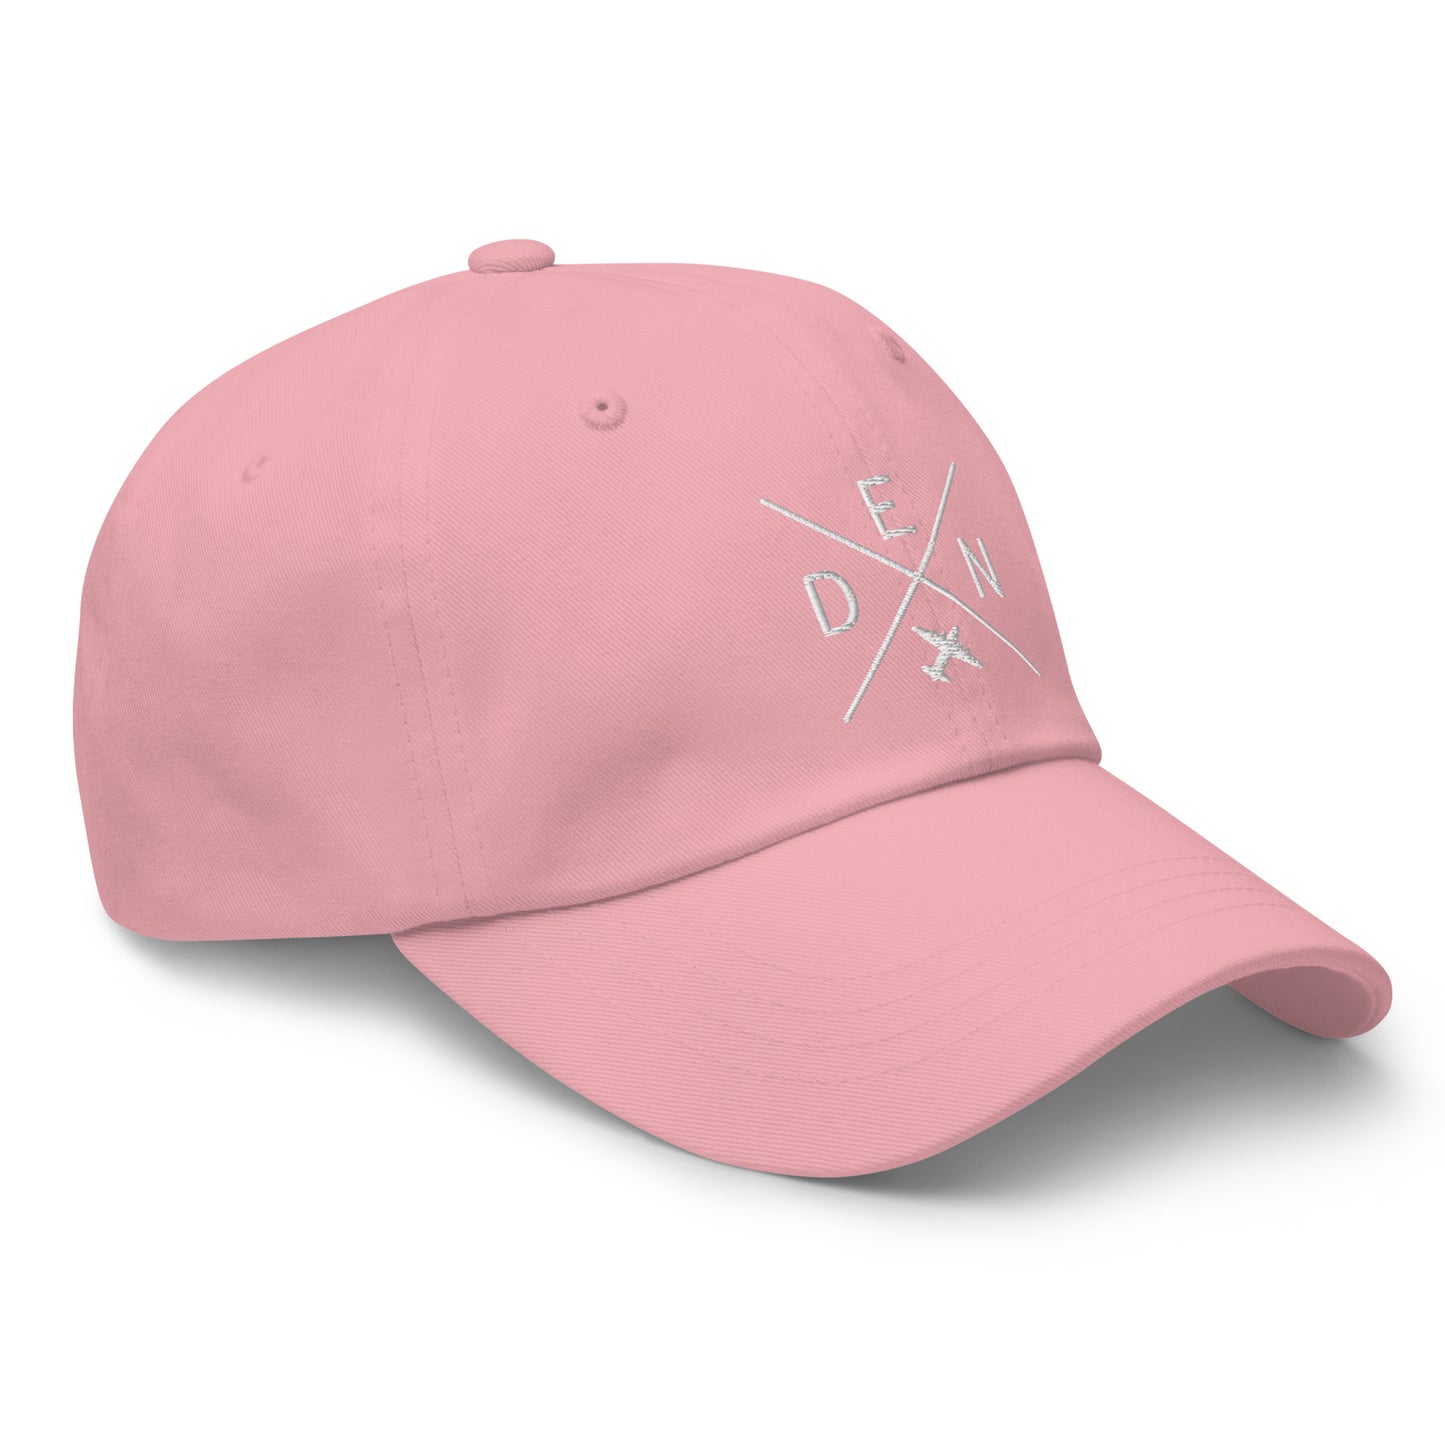 Crossed-X Dad Hat - White • DEN Denver • YHM Designs - Image 26